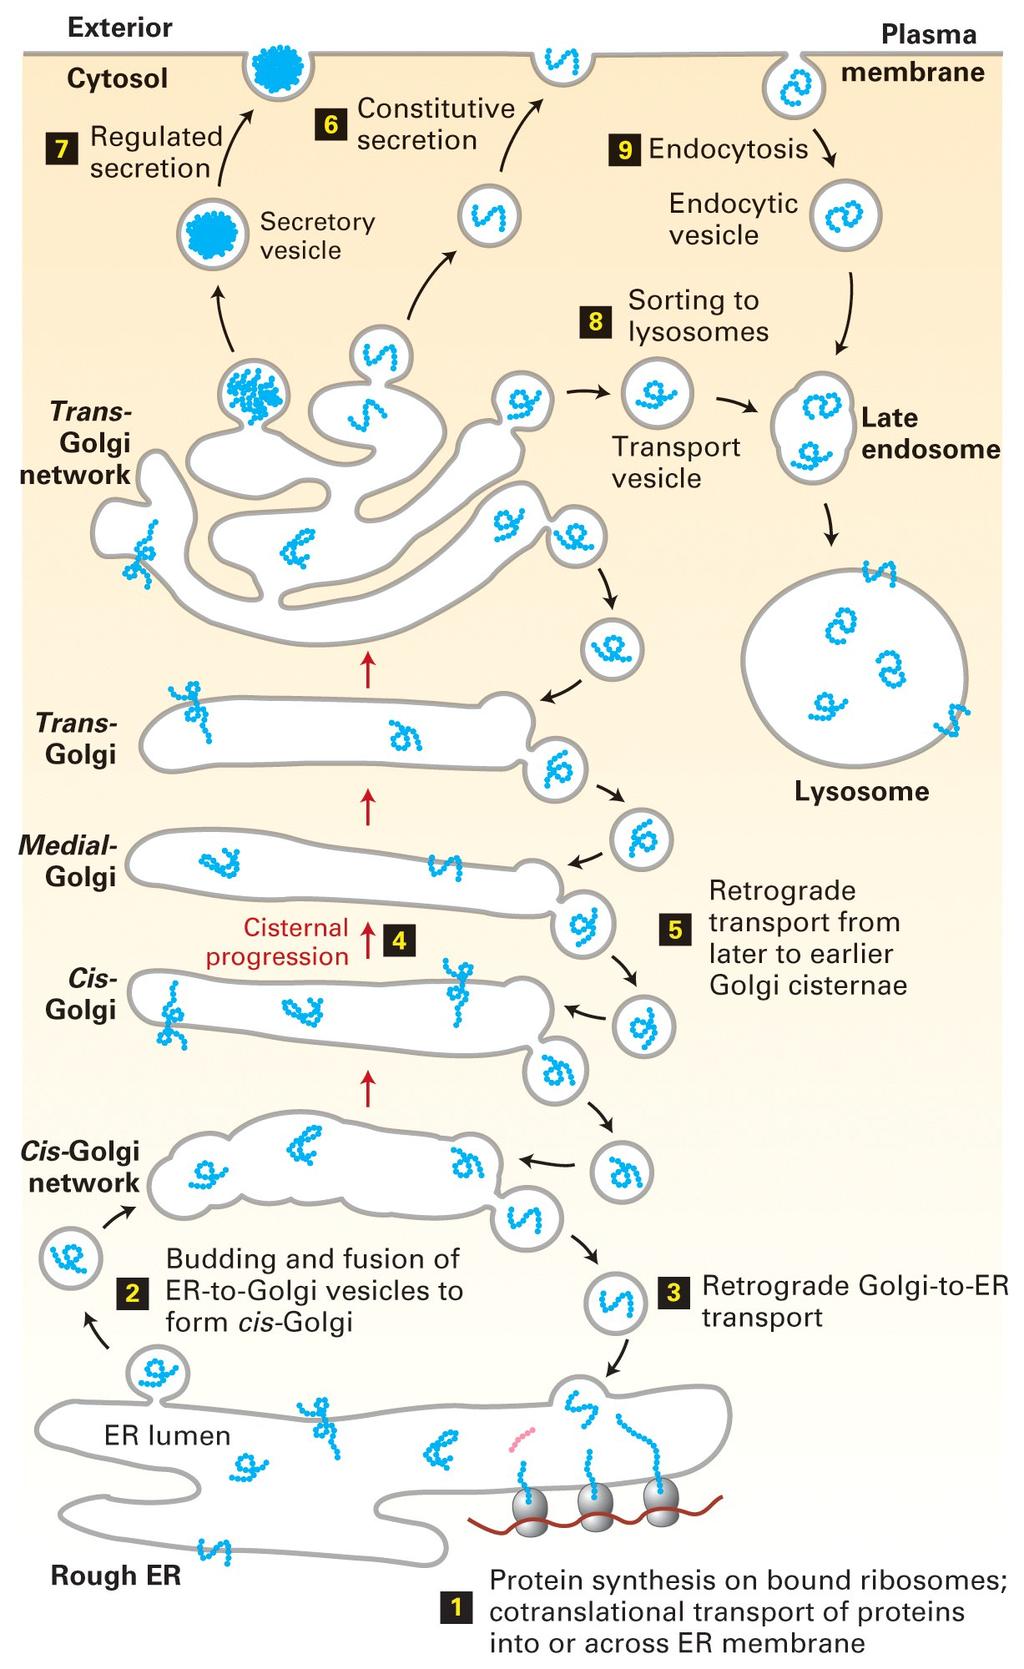 Transporte vesicular: visão geral das vias secretora e endocítica de